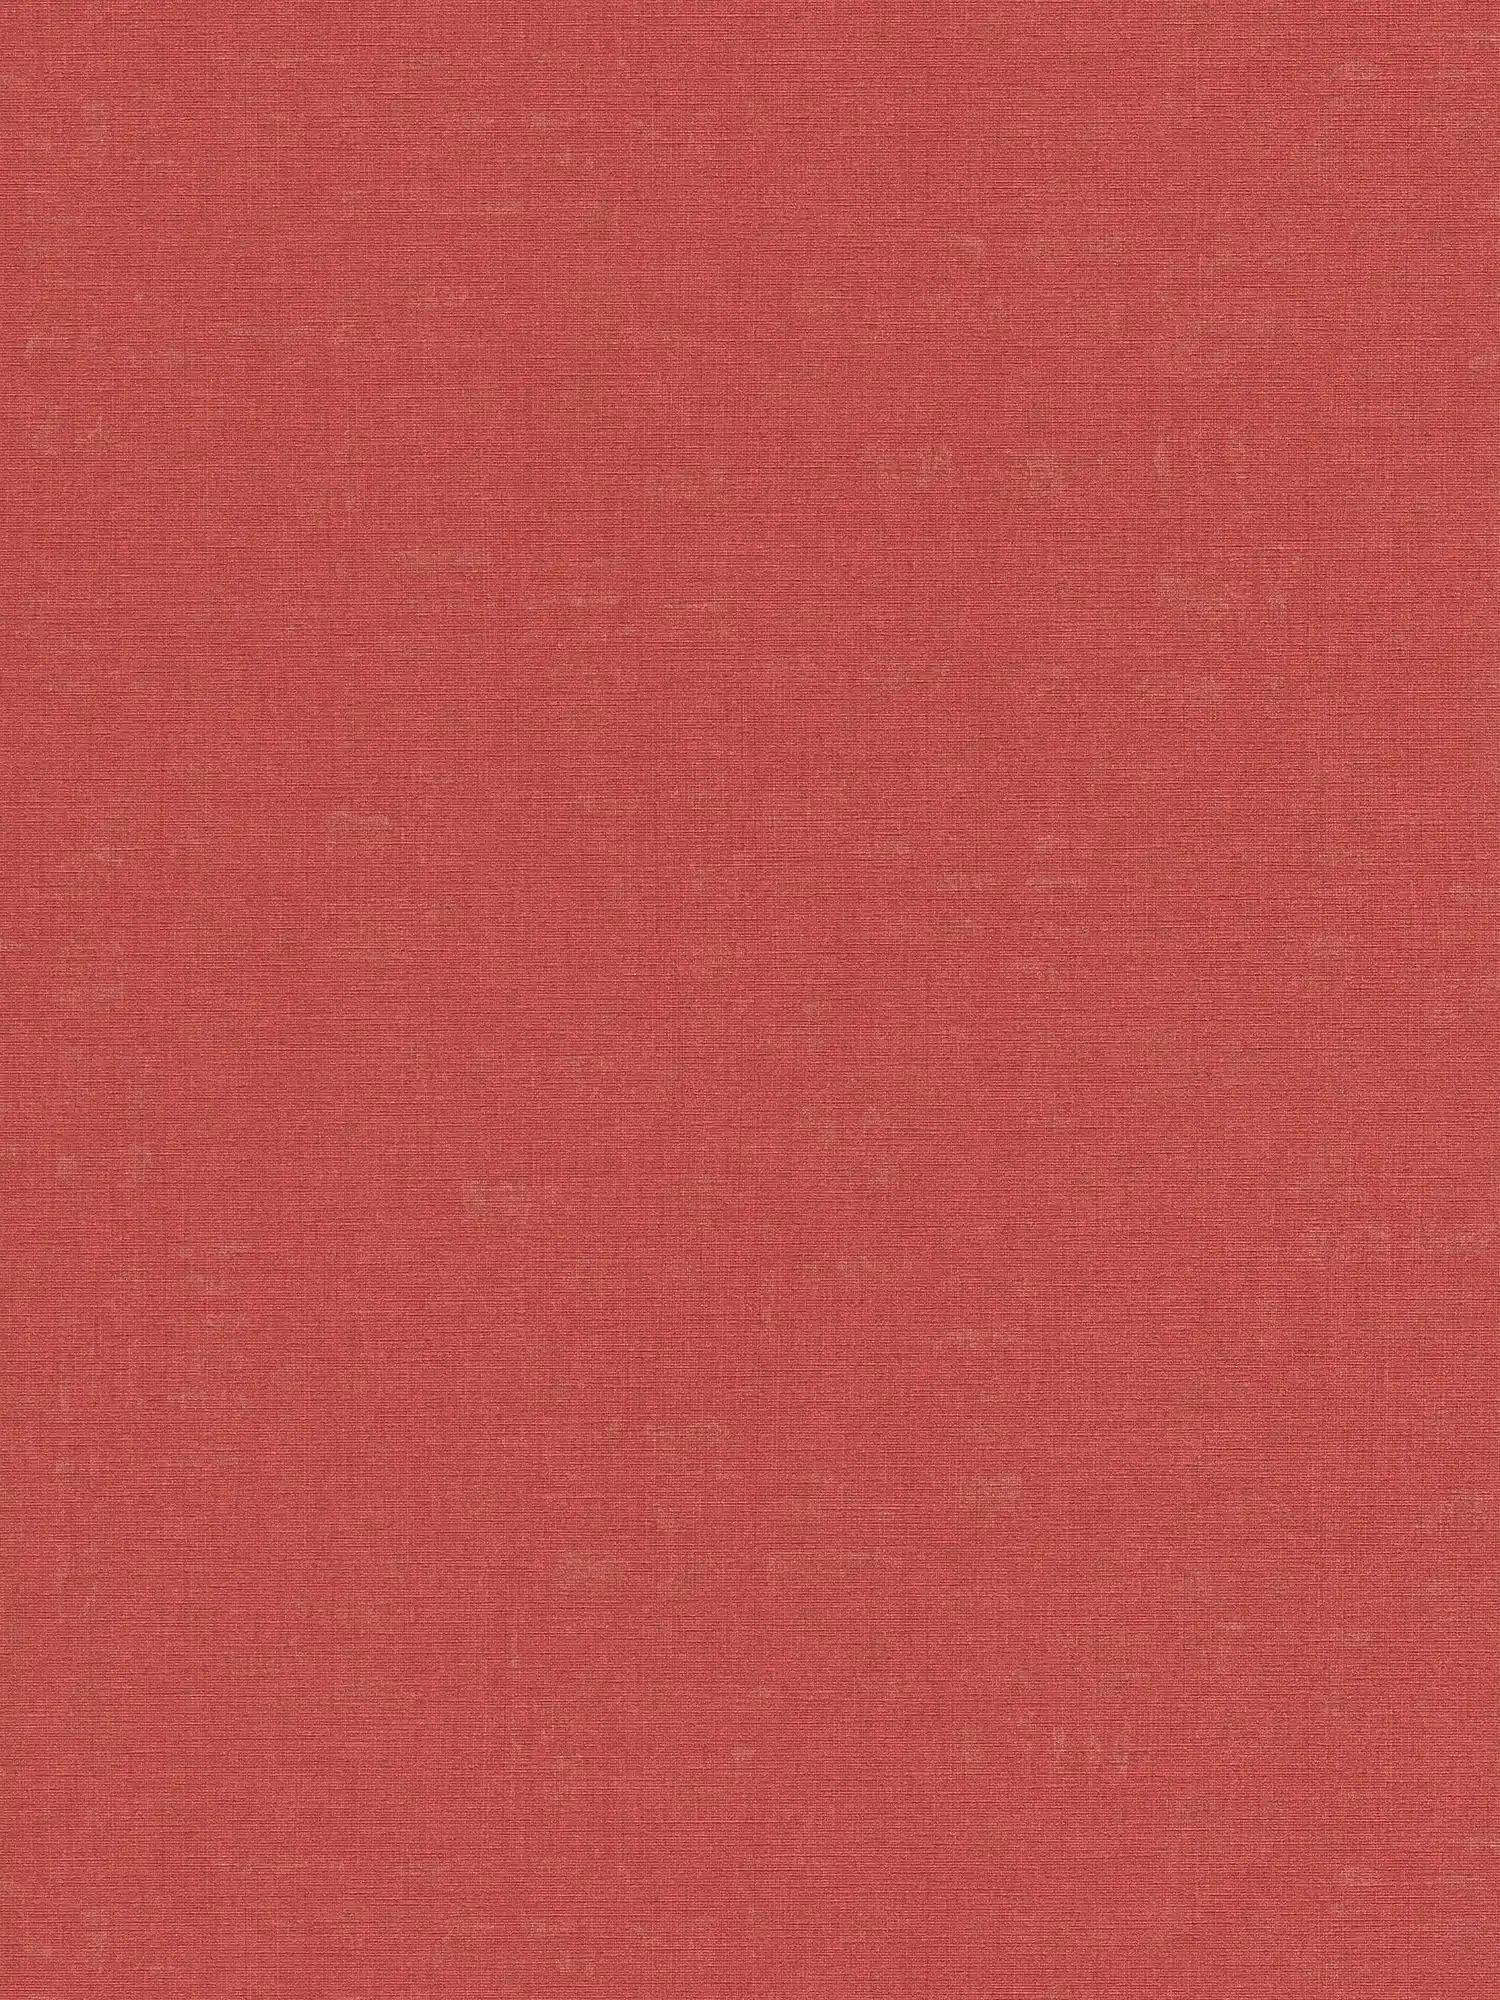 Papel pintado rojo liso y moteado con estructura en relieve
